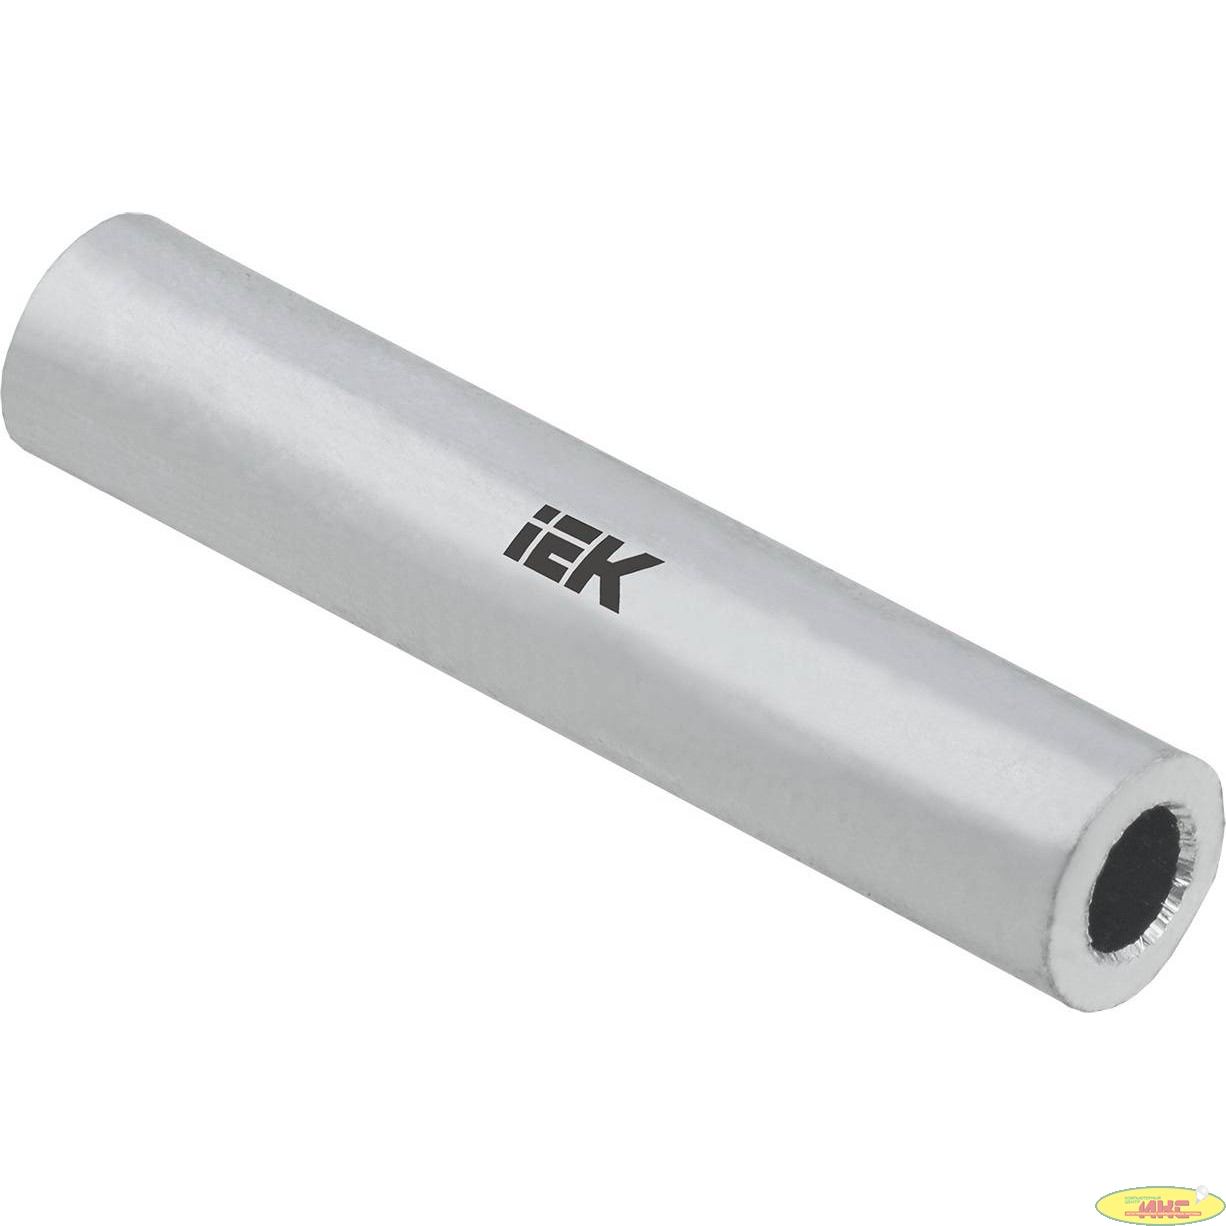 Iek UGL10-185-19 Гильза GL-185 алюминиевая соединительная ИЭК